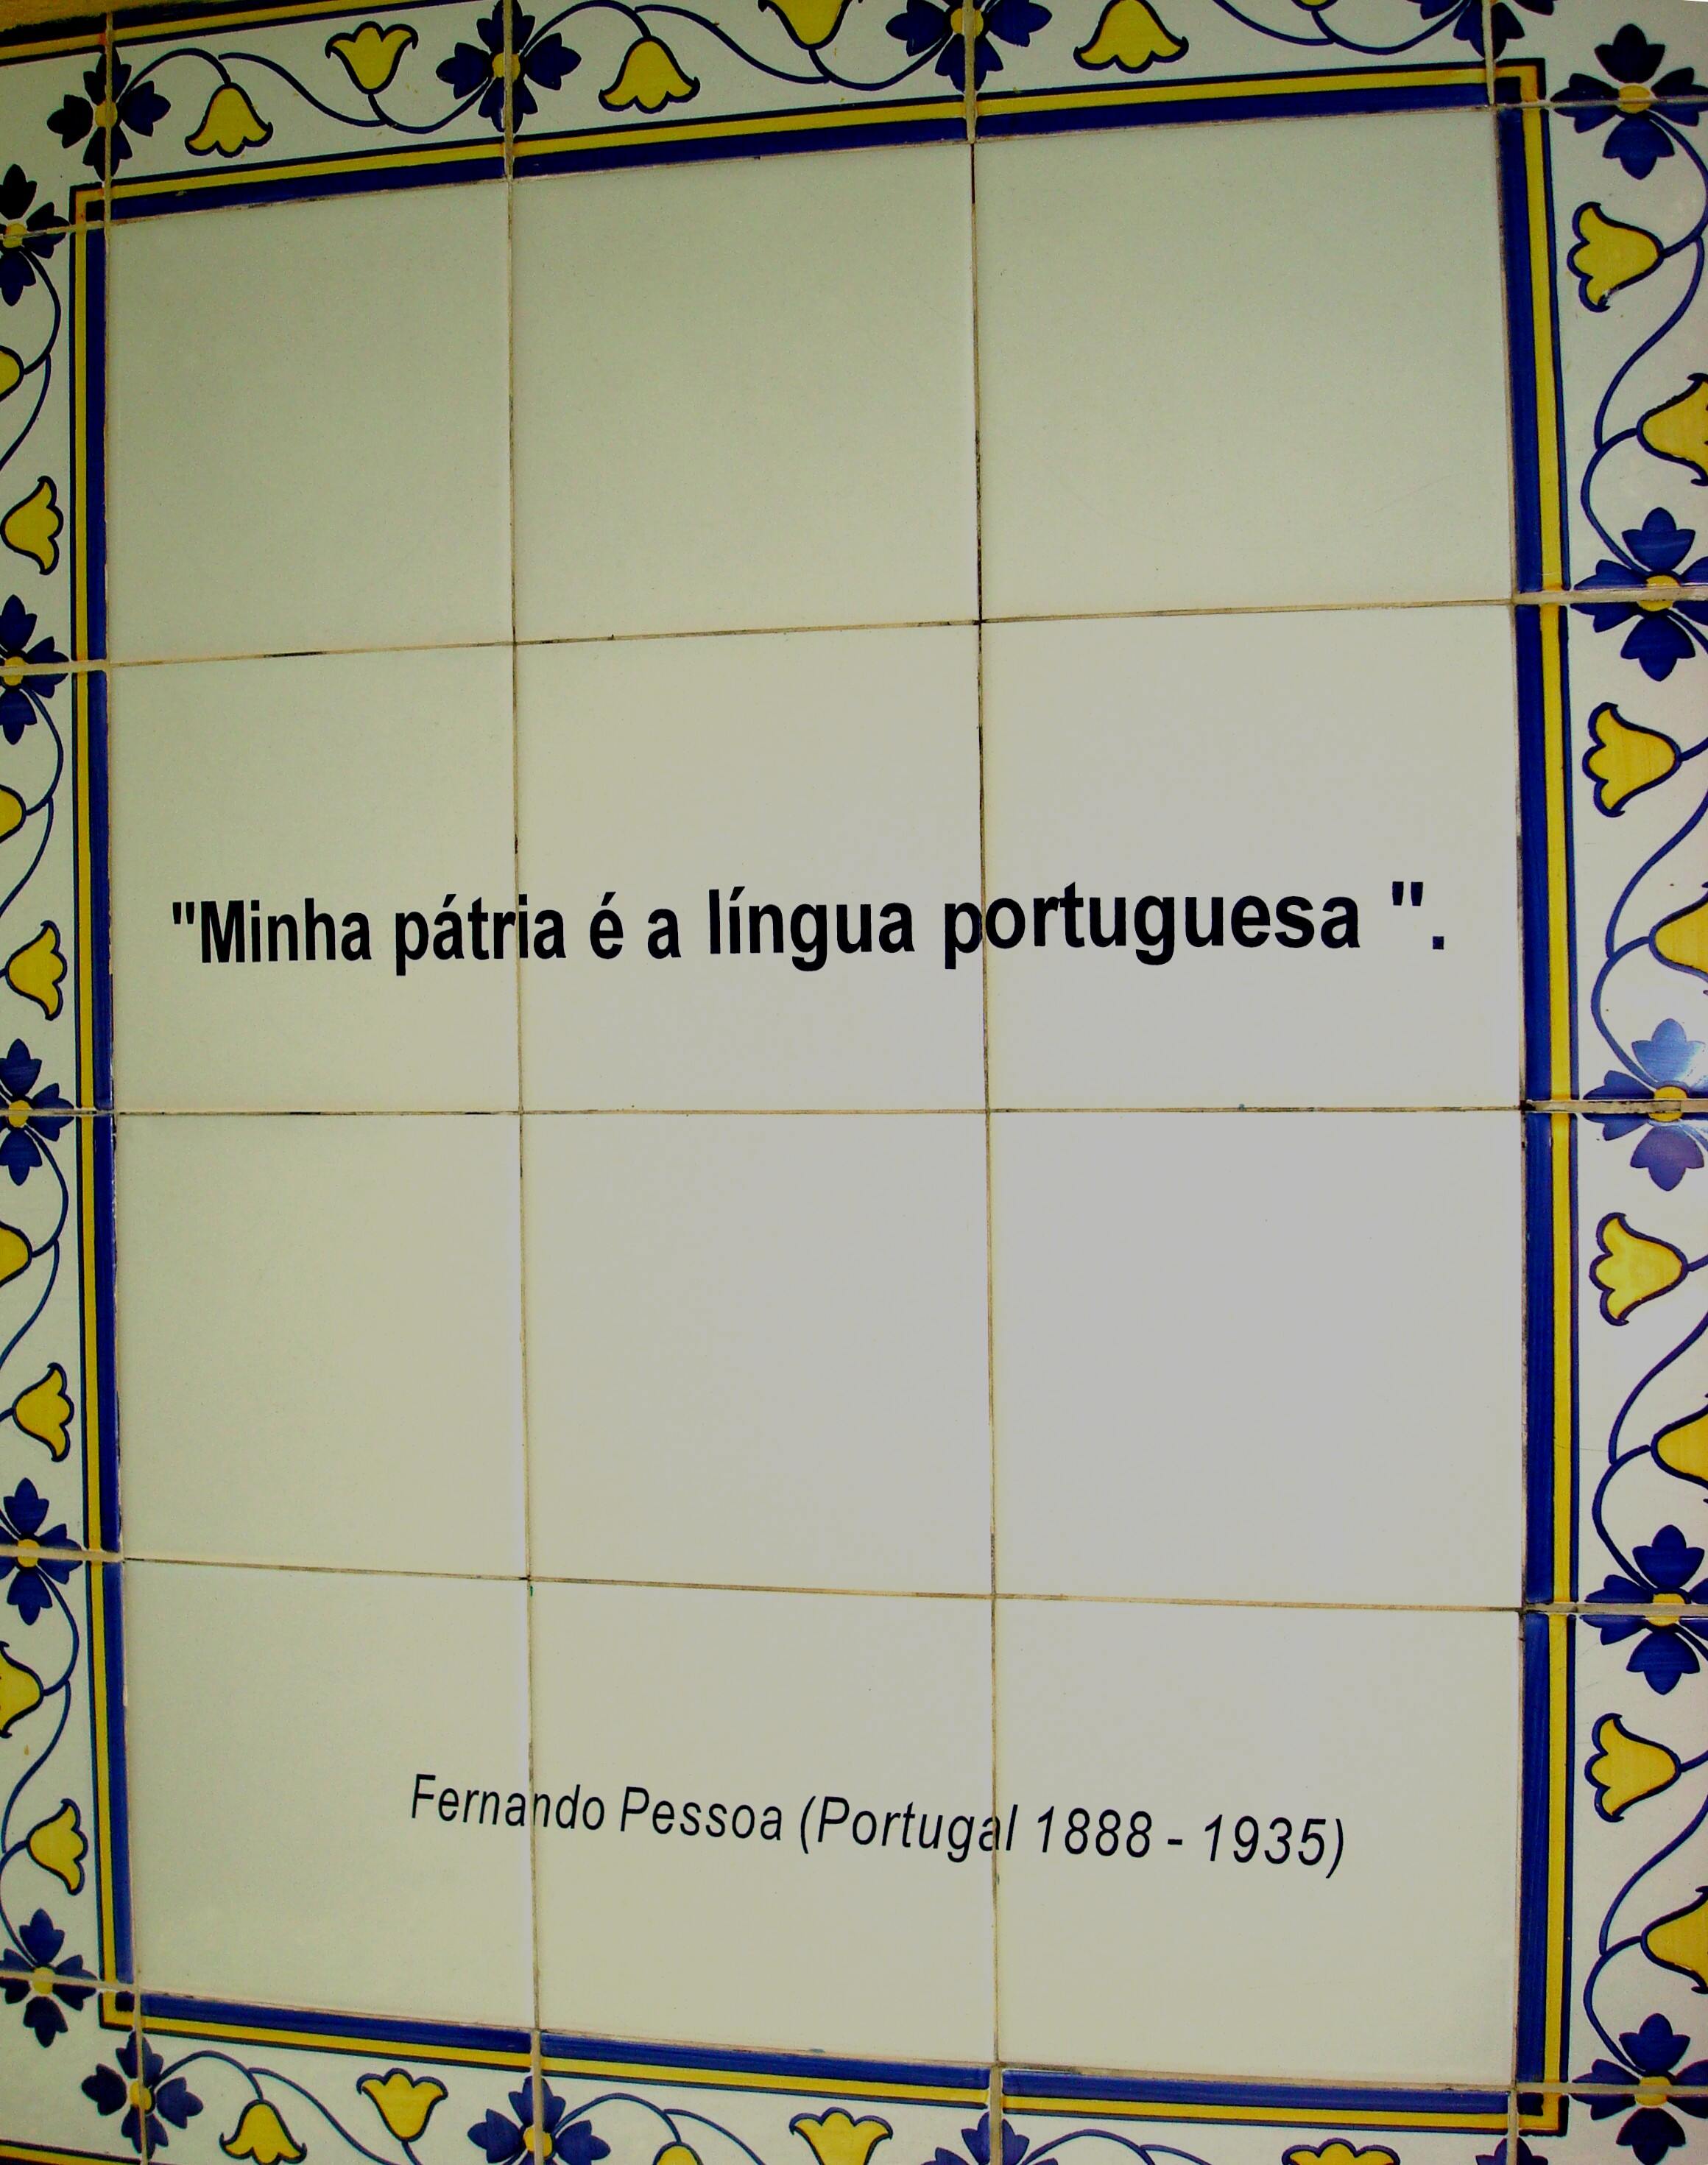 Citação de pt:Fernando Pessoa, um dos homenageados no Bosque de Portugal, Curitiba, Brasil.